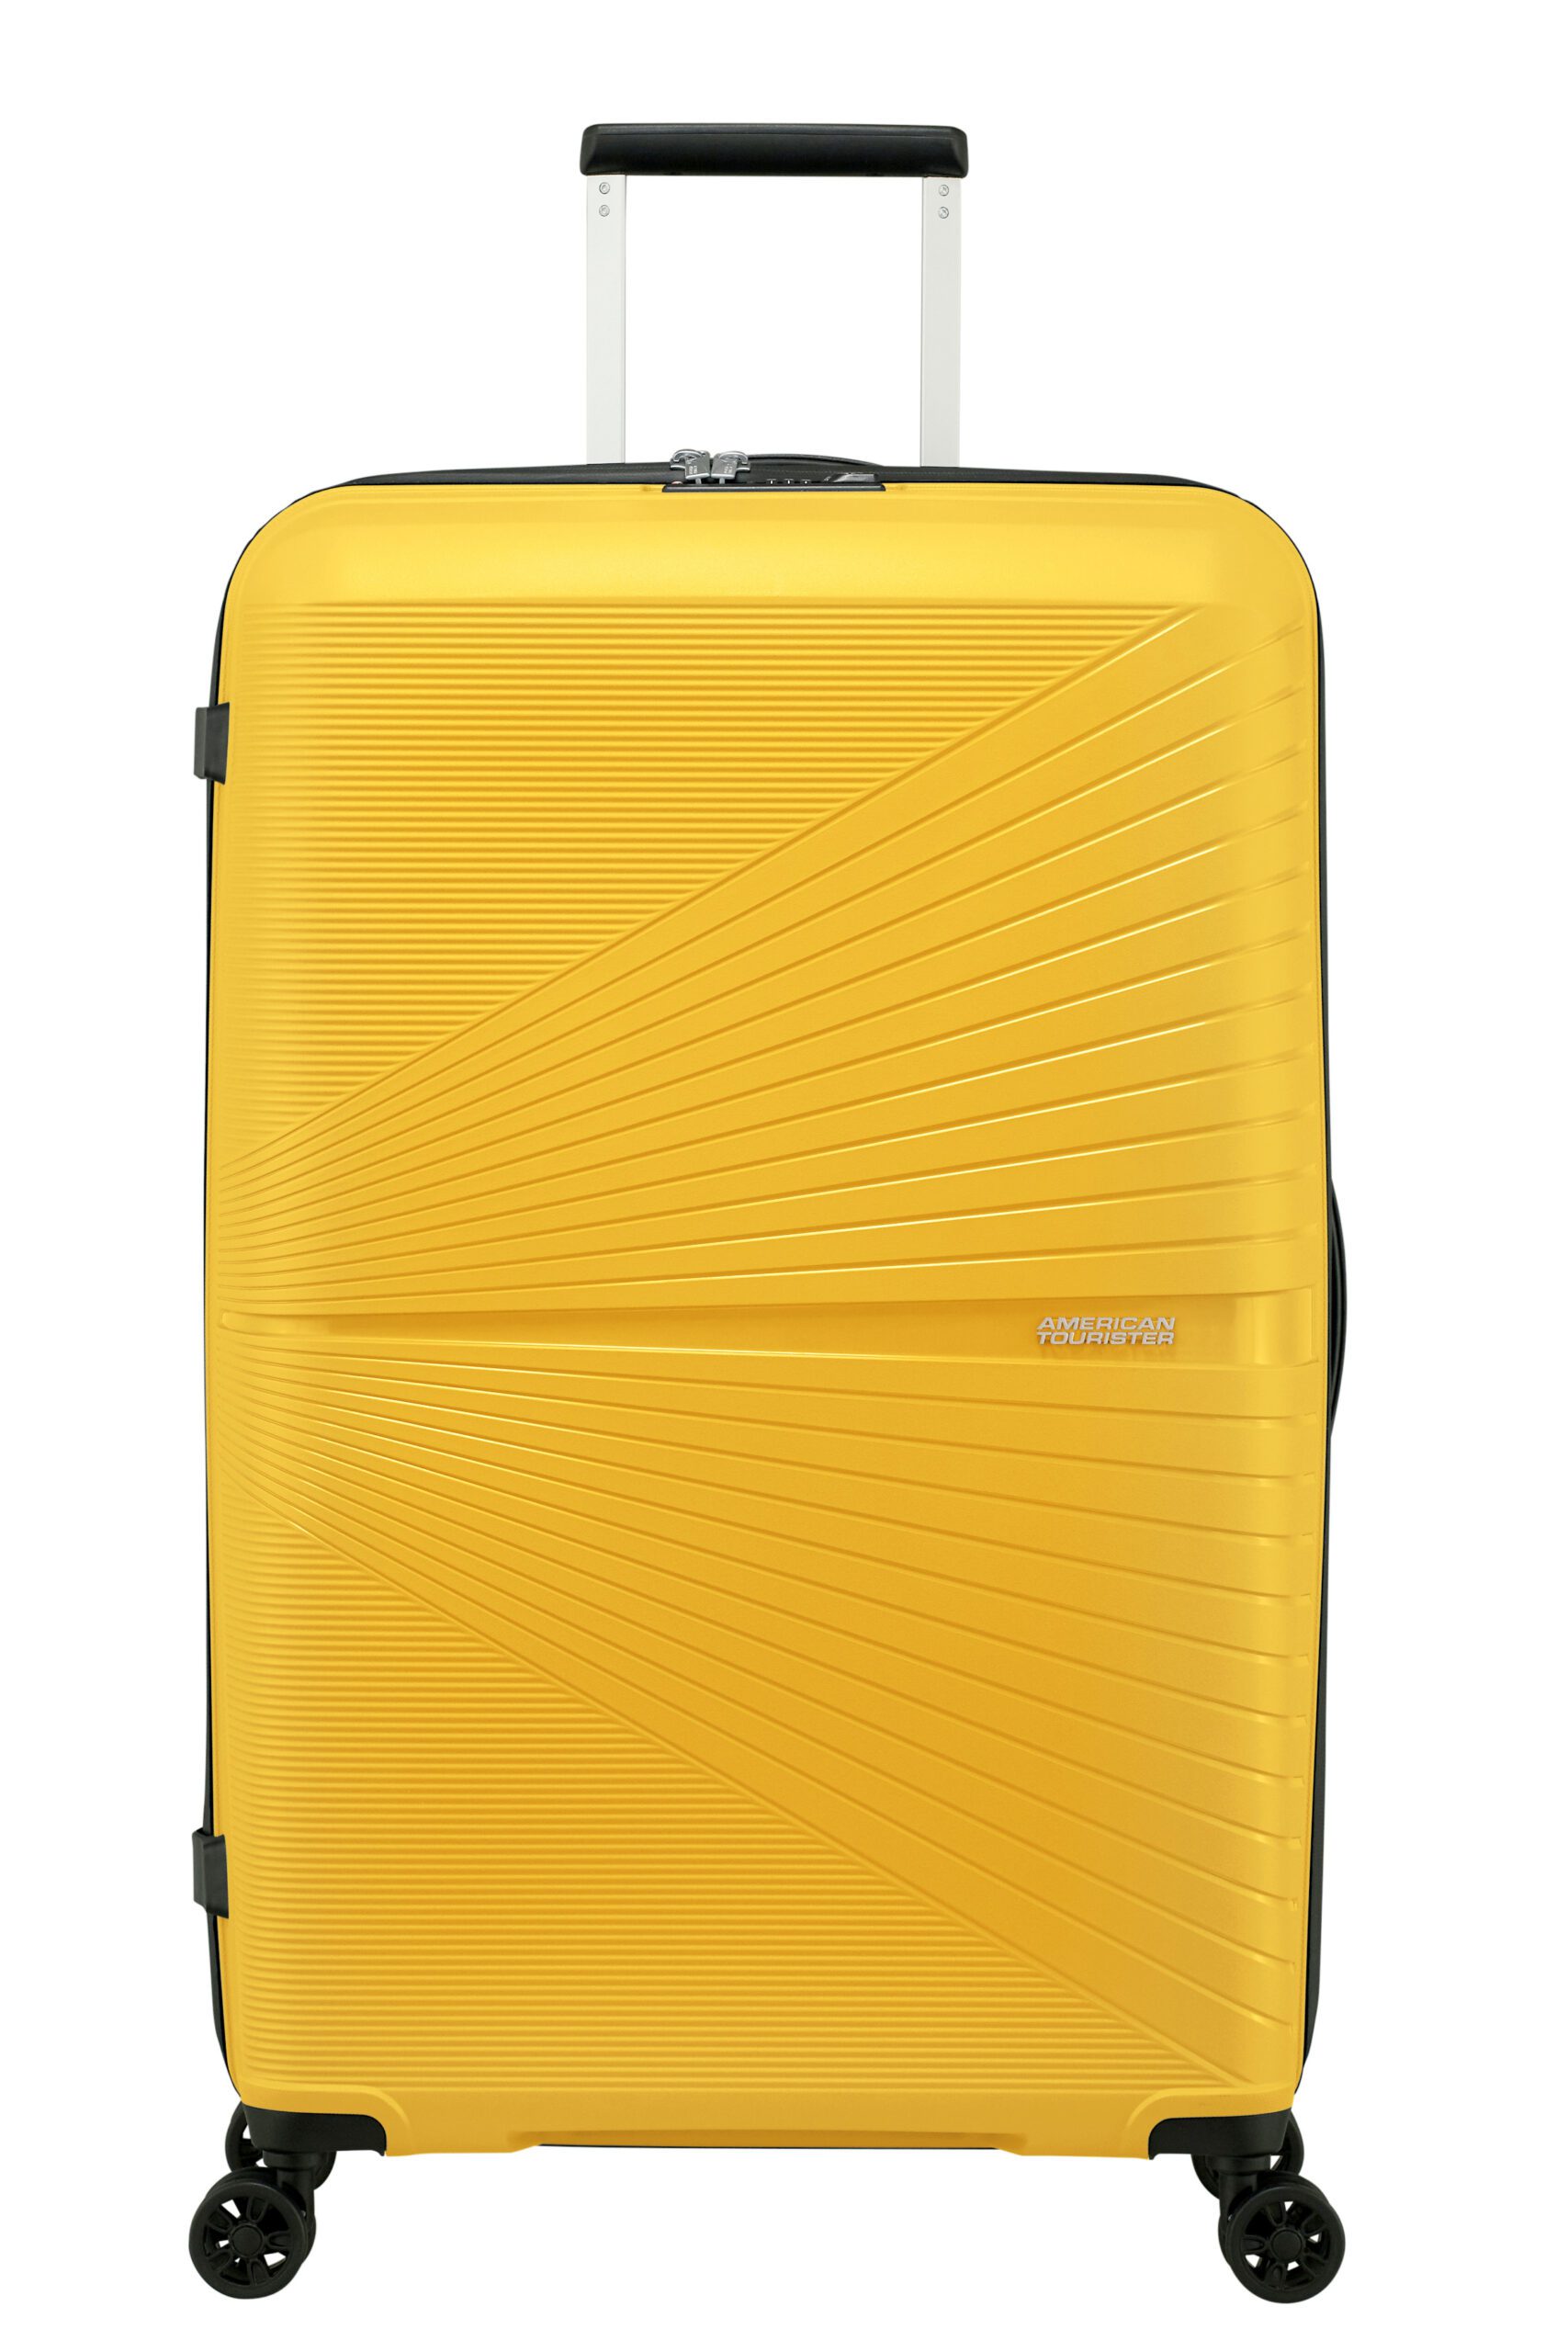 Vestiging isolatie Bestuurbaar American Tourister Airconic Spinner 77 cm Lemondrop | Goodwalt Bags & Cases